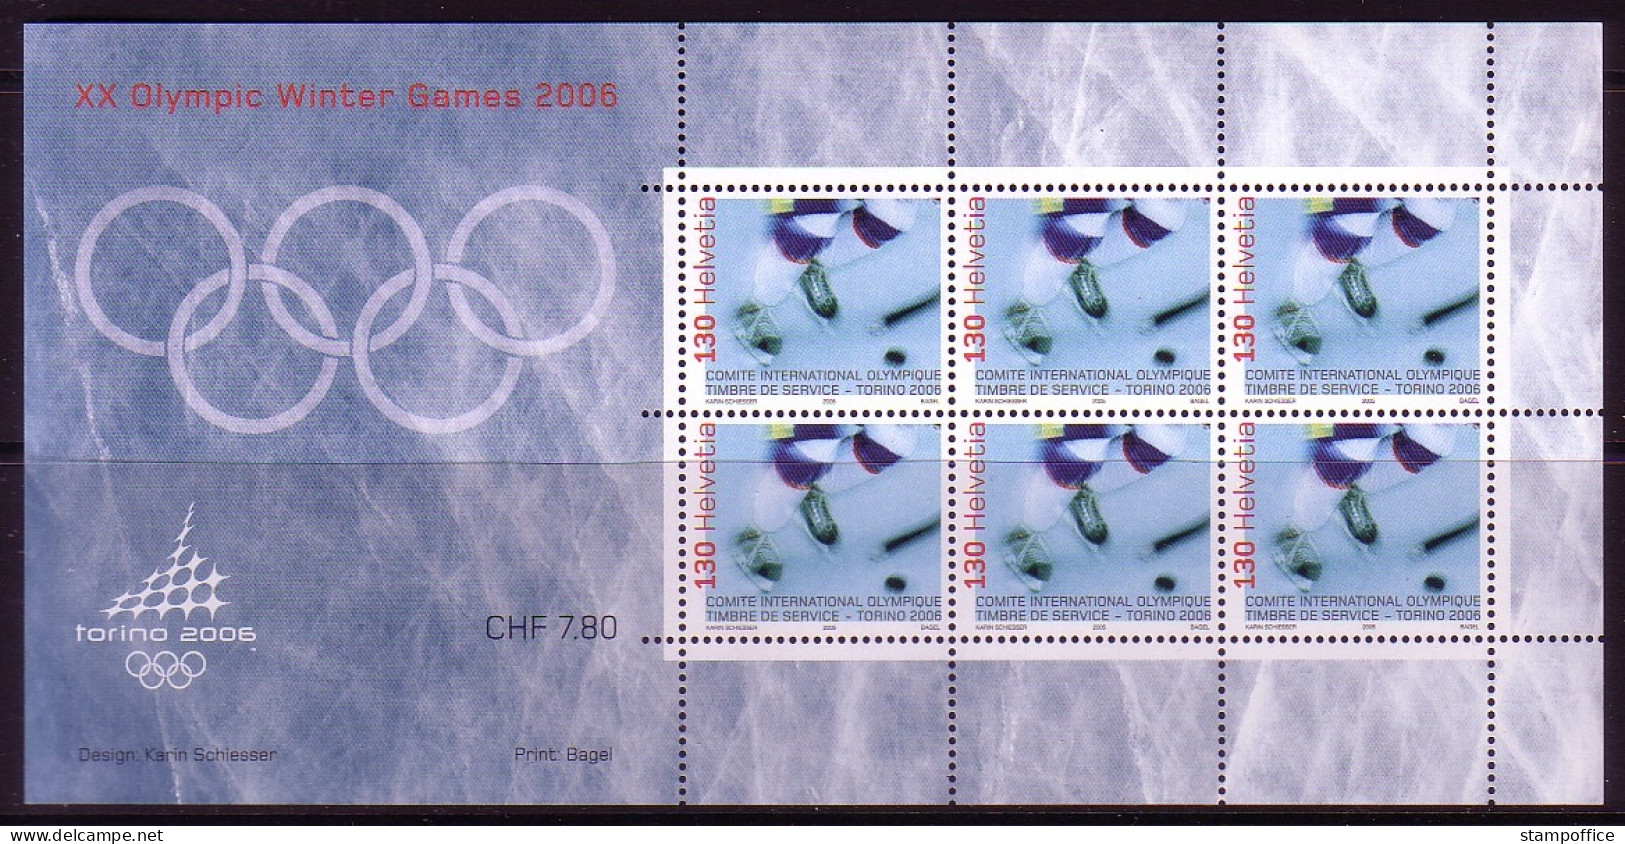 SCHWEIZ INTERNATIONALES OLYMPISCHES KOMITEE (IOC) MI-NR. 5 POSTFRISCH(MINT) KLEINBOGEN OLYMPIADE 2006 TURIN EISHOCKEY - Invierno 2006: Turín